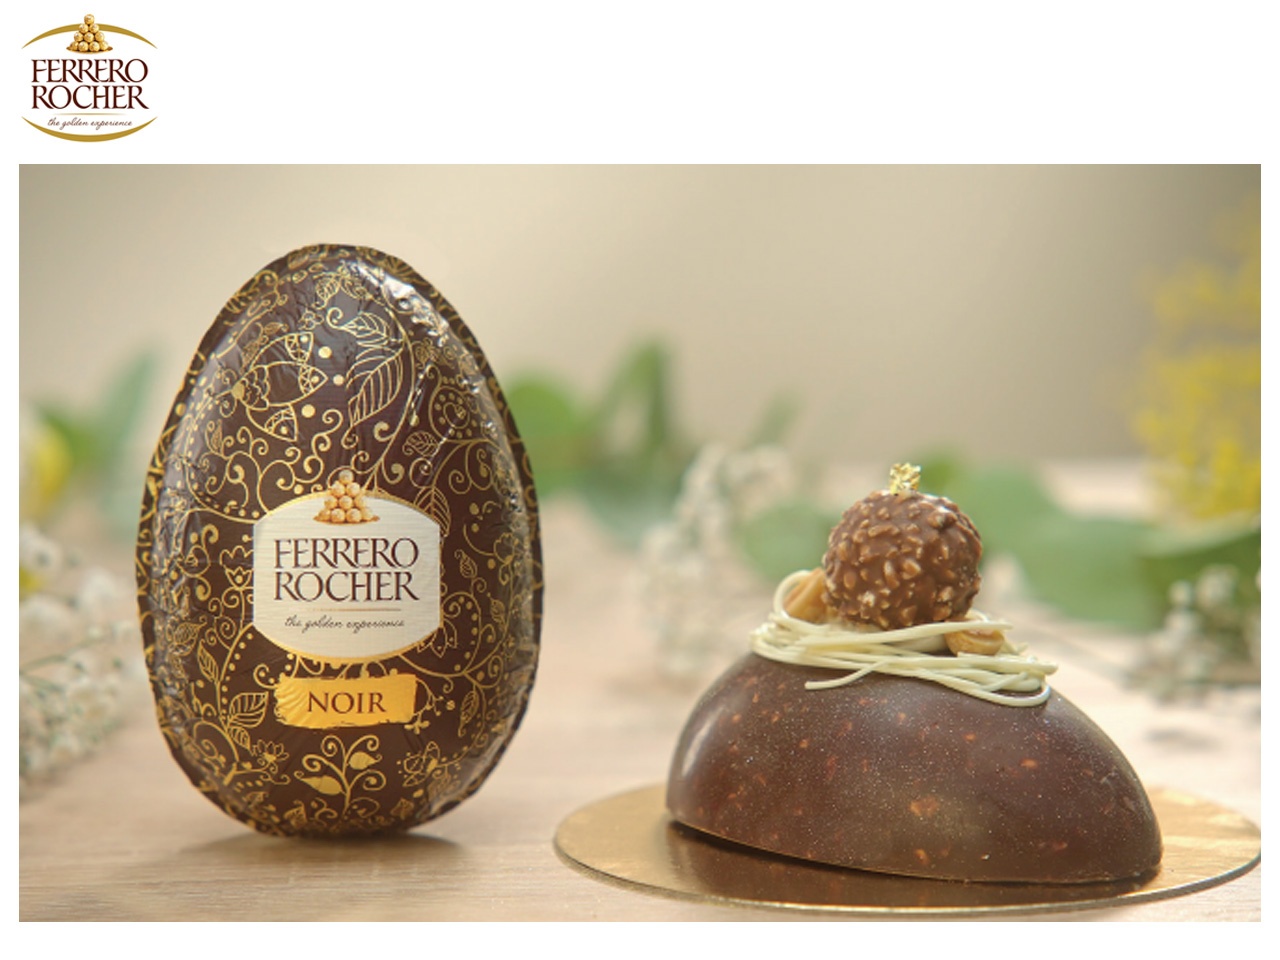 Ferrero Rocher dévoile son œuf de Pâques au chocolat noir